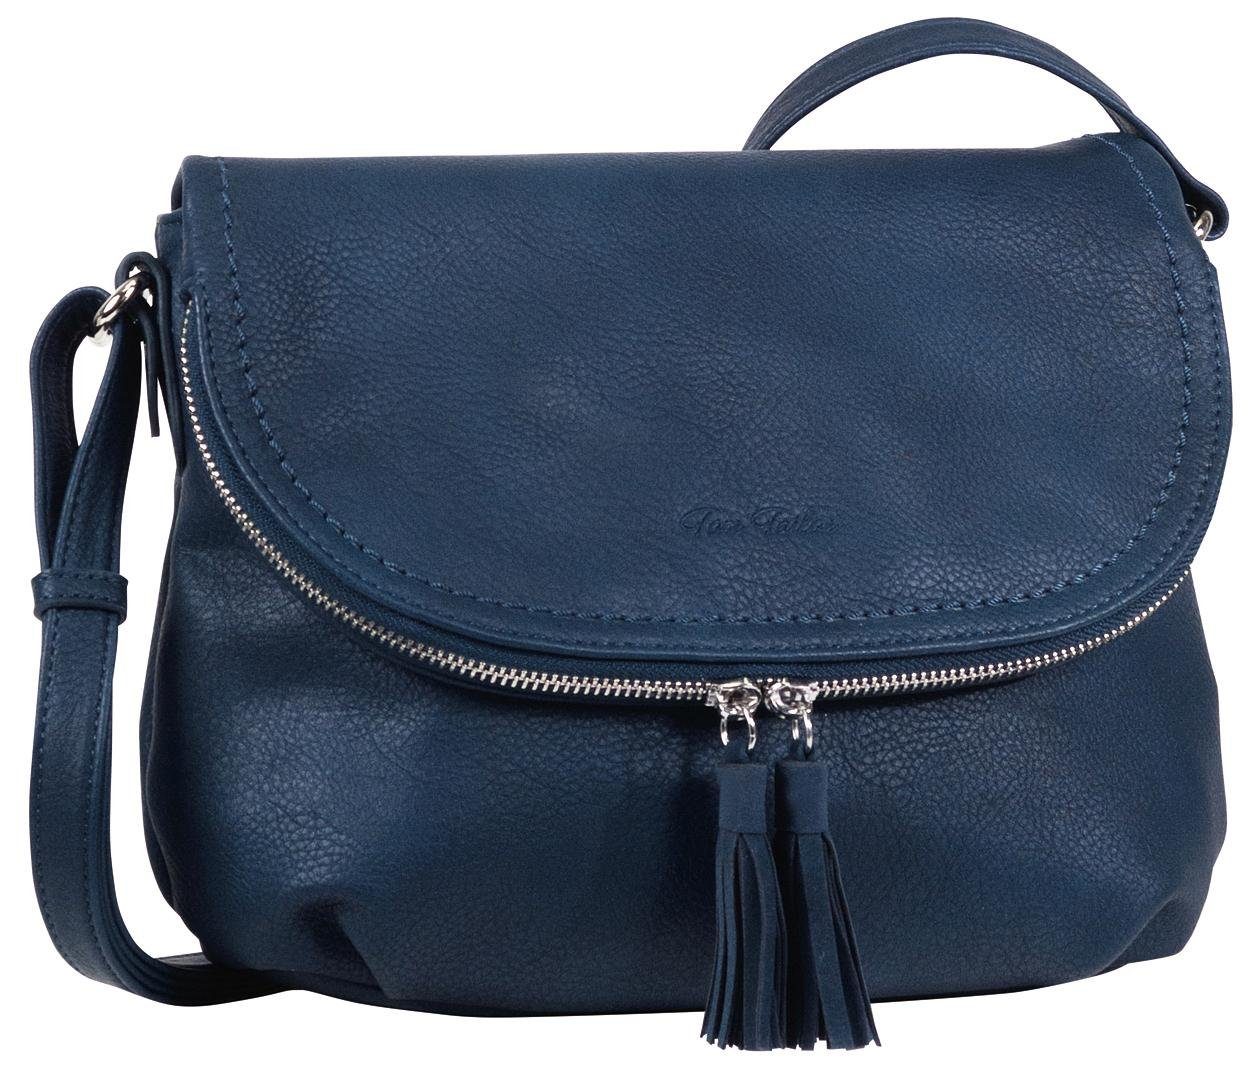 Blaue Tasche online kaufen | OTTO